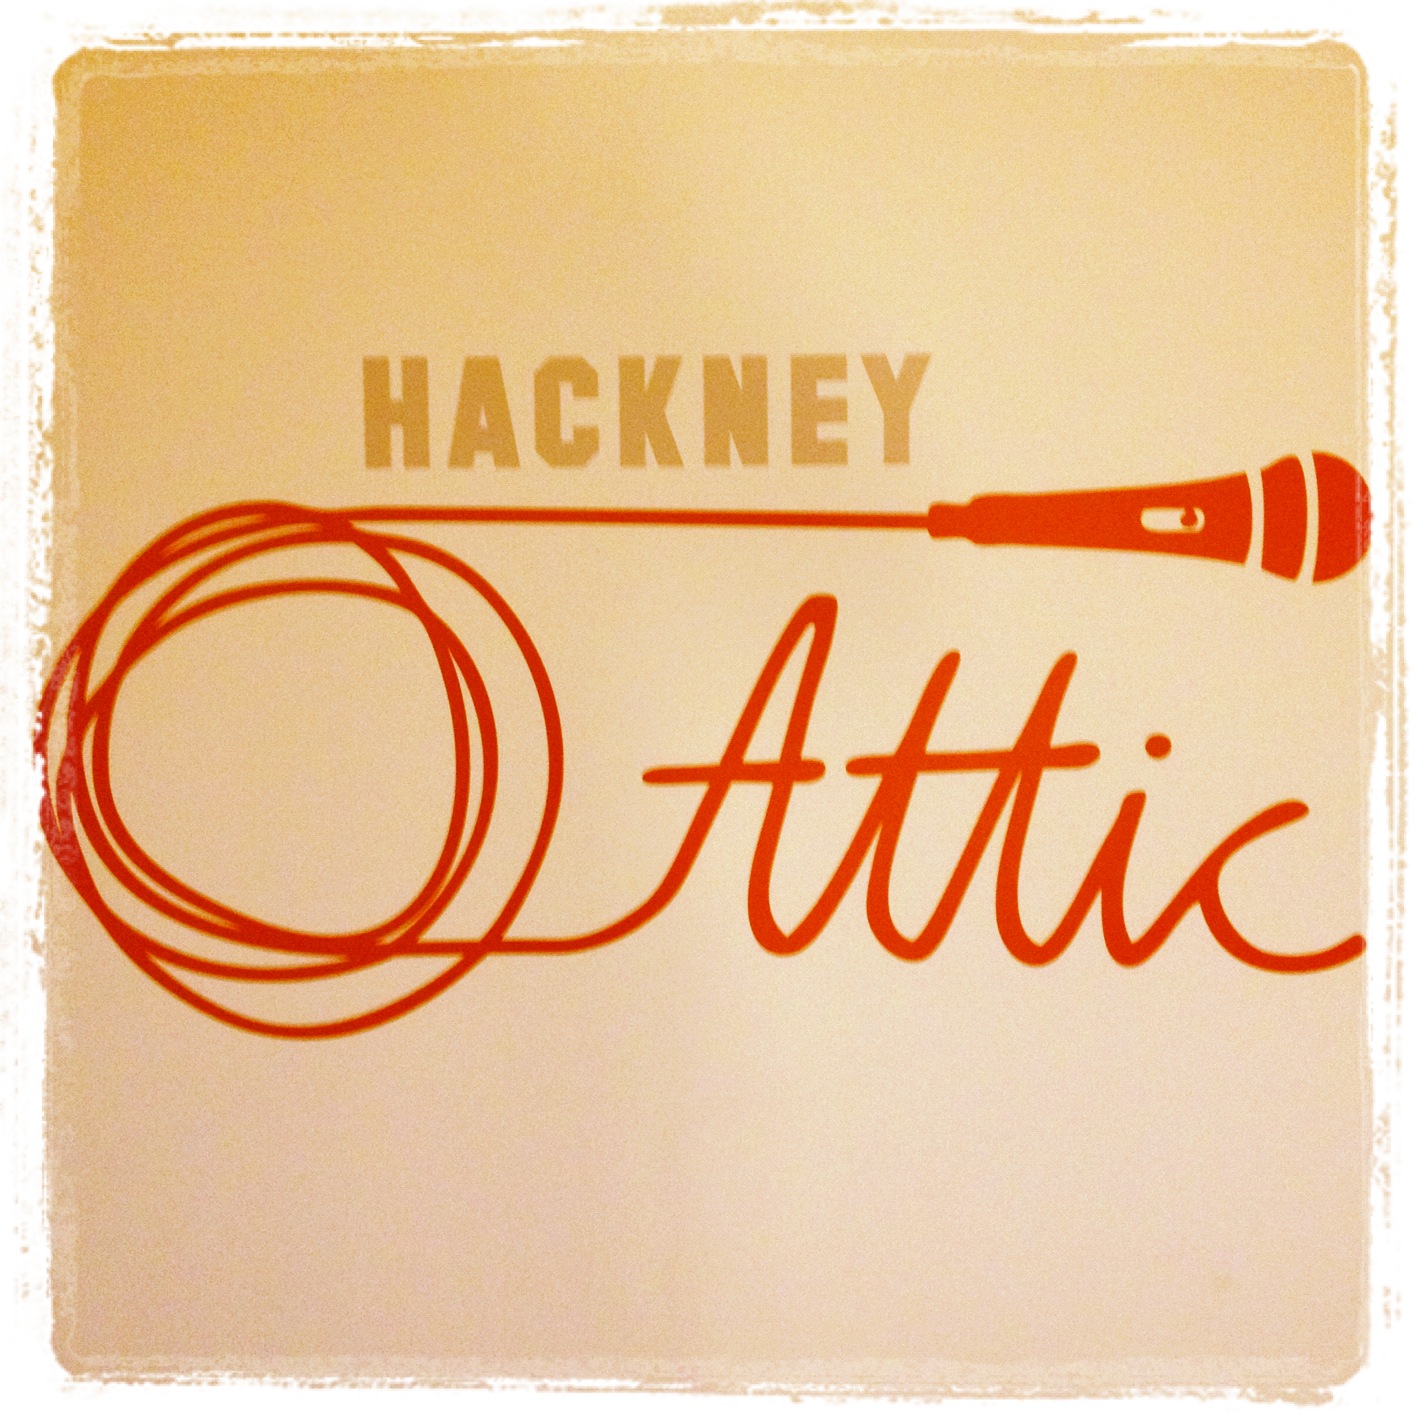 hackney-attic-17-11-2016andrew